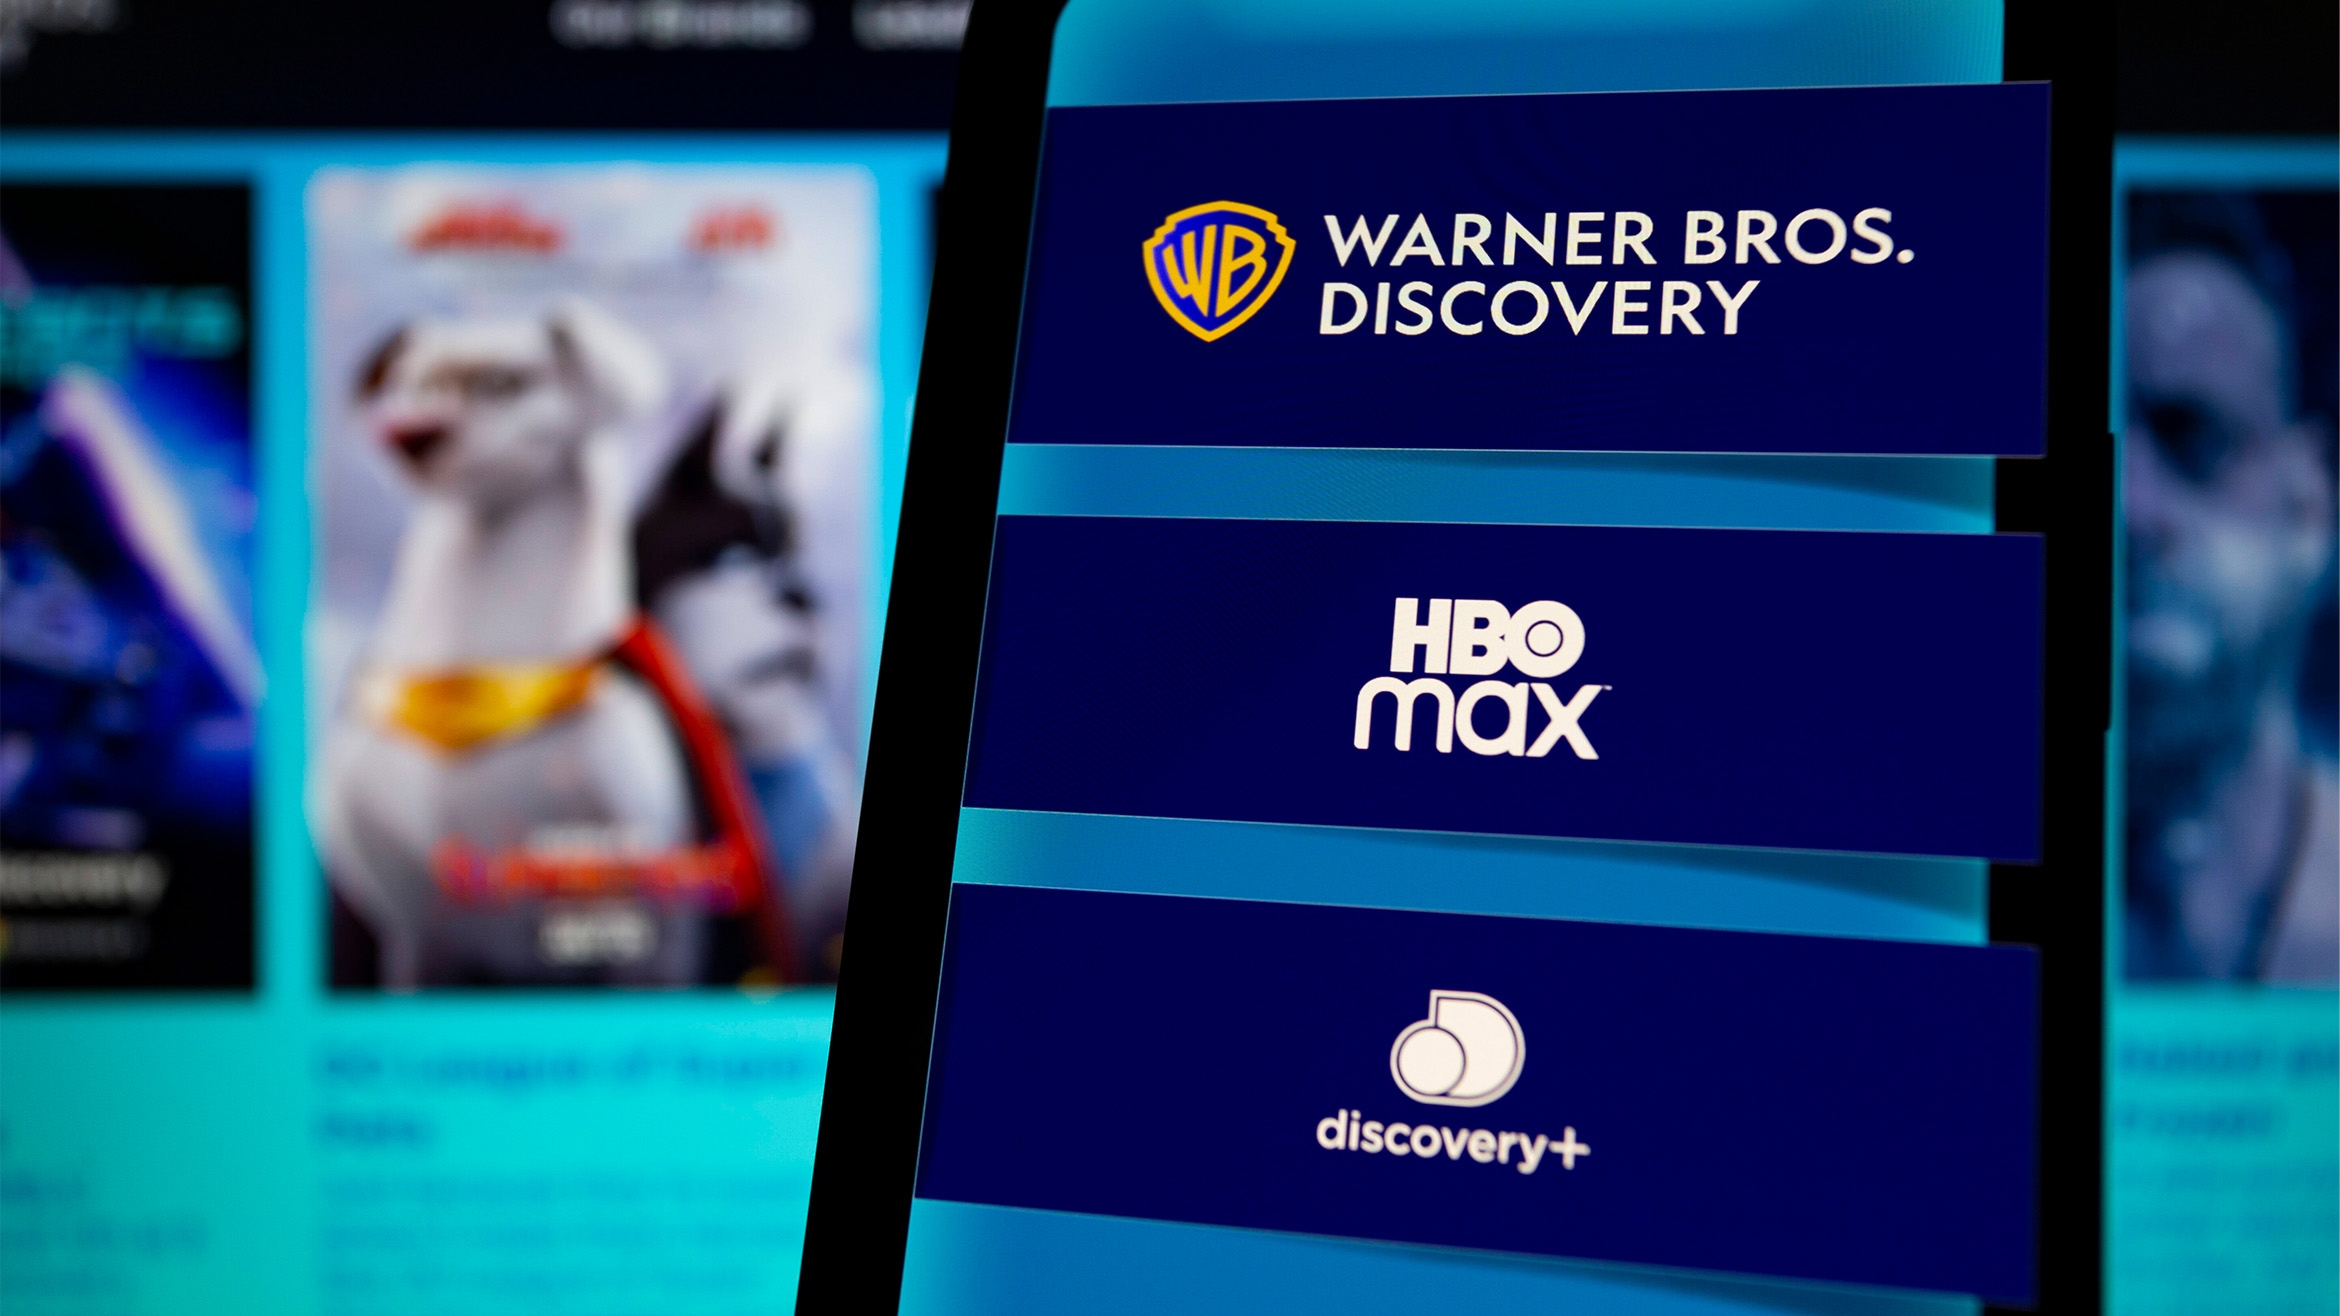 Warner Bros. Discovery will seine Streaming-Dienste HBO Max und Discovery+ vereinen -